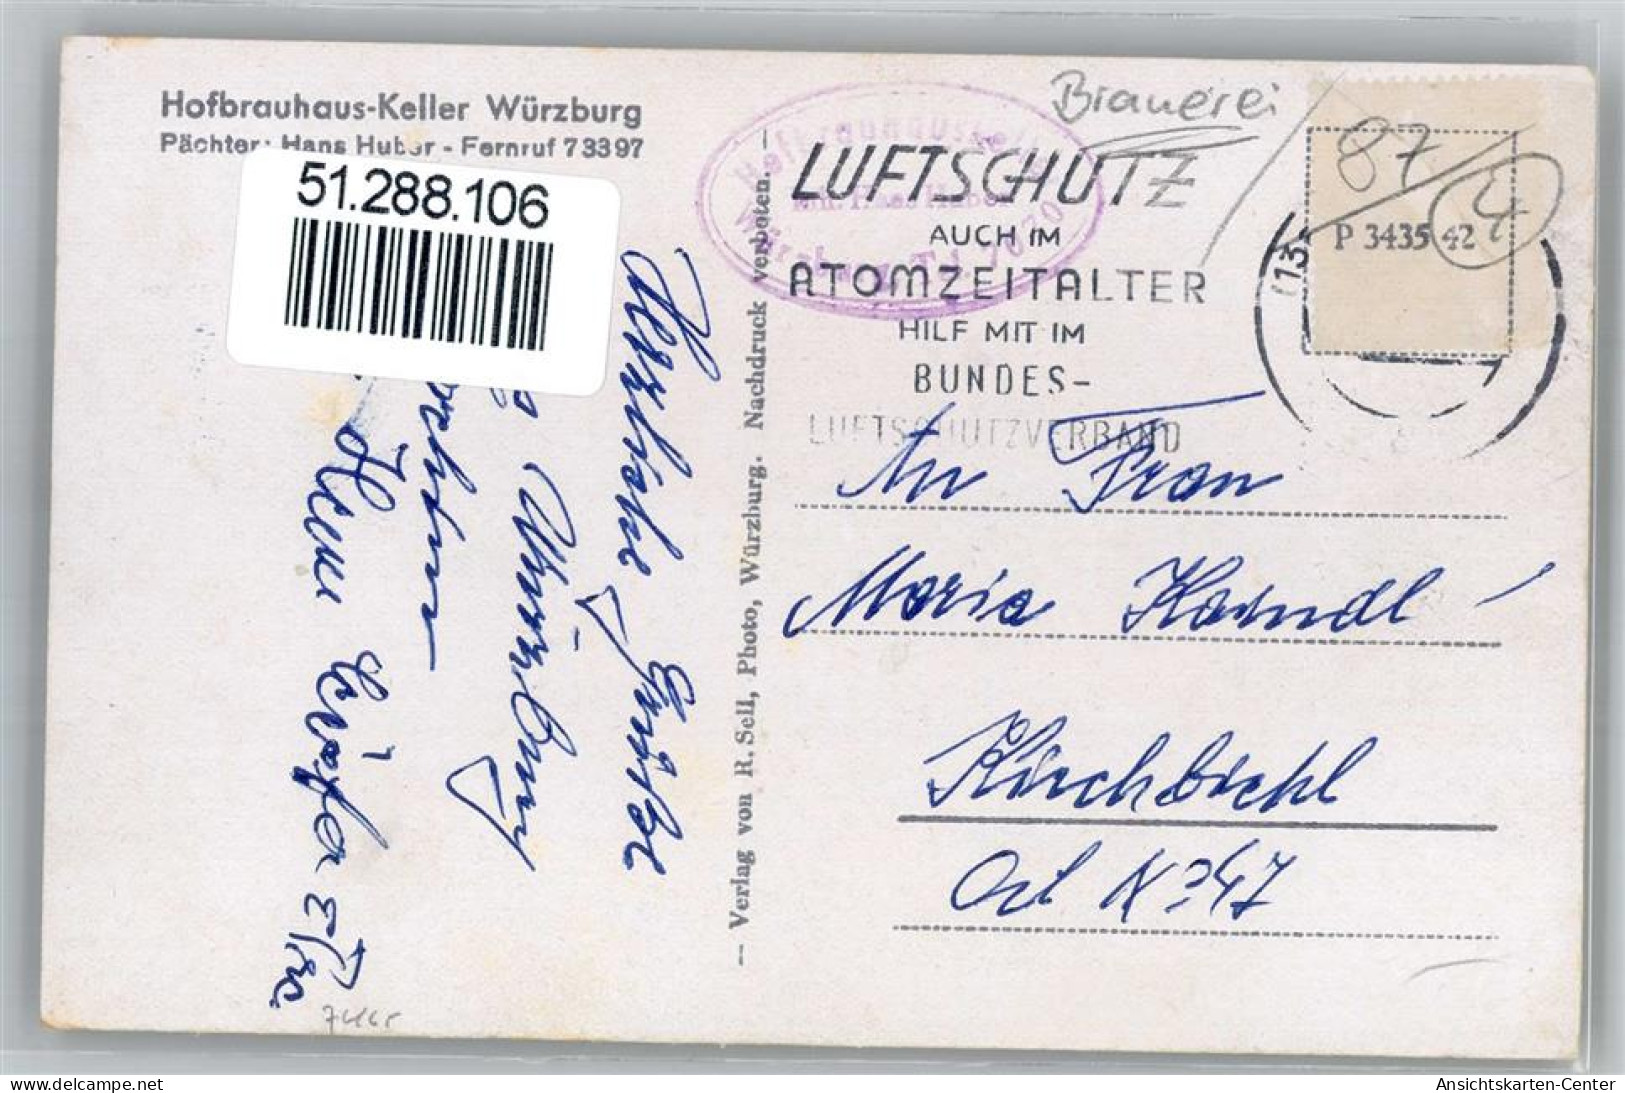 51288106 - Wuerzburg - Würzburg